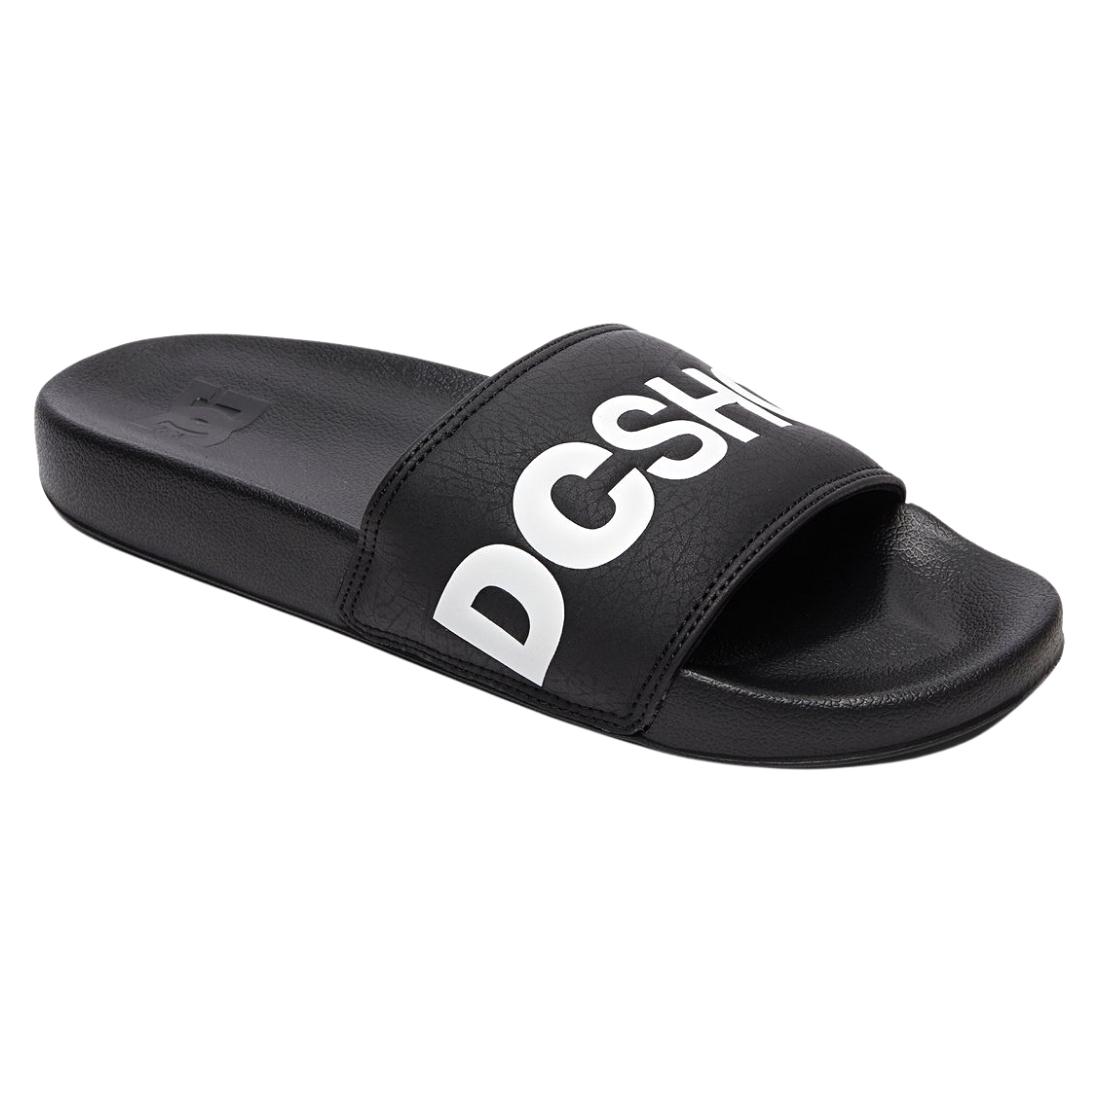 DC Slide Sandals - Black/White